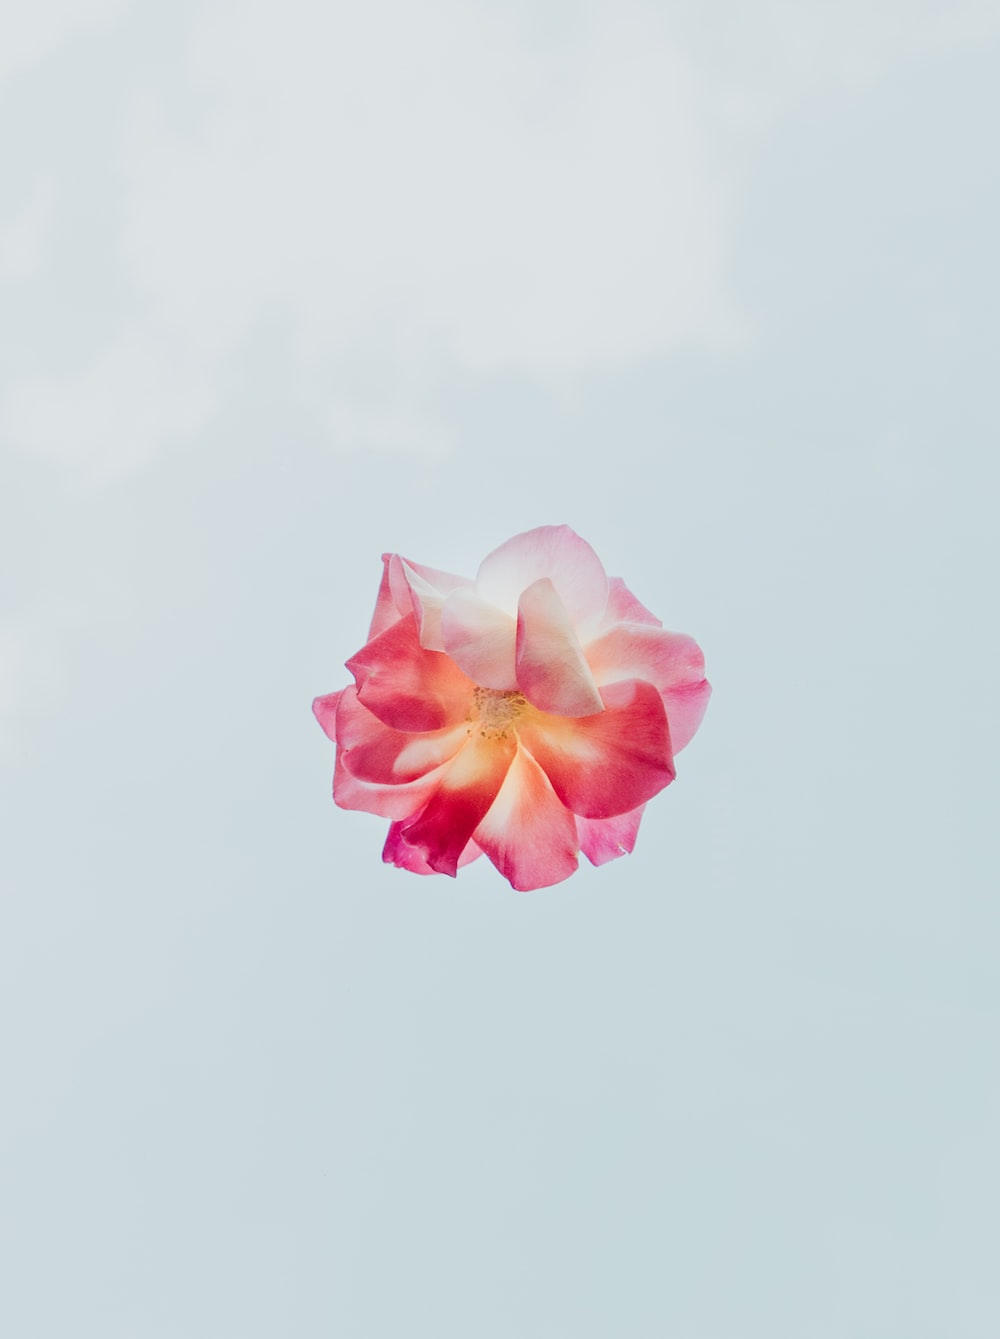 Flower Wallpaper: Free HD Download